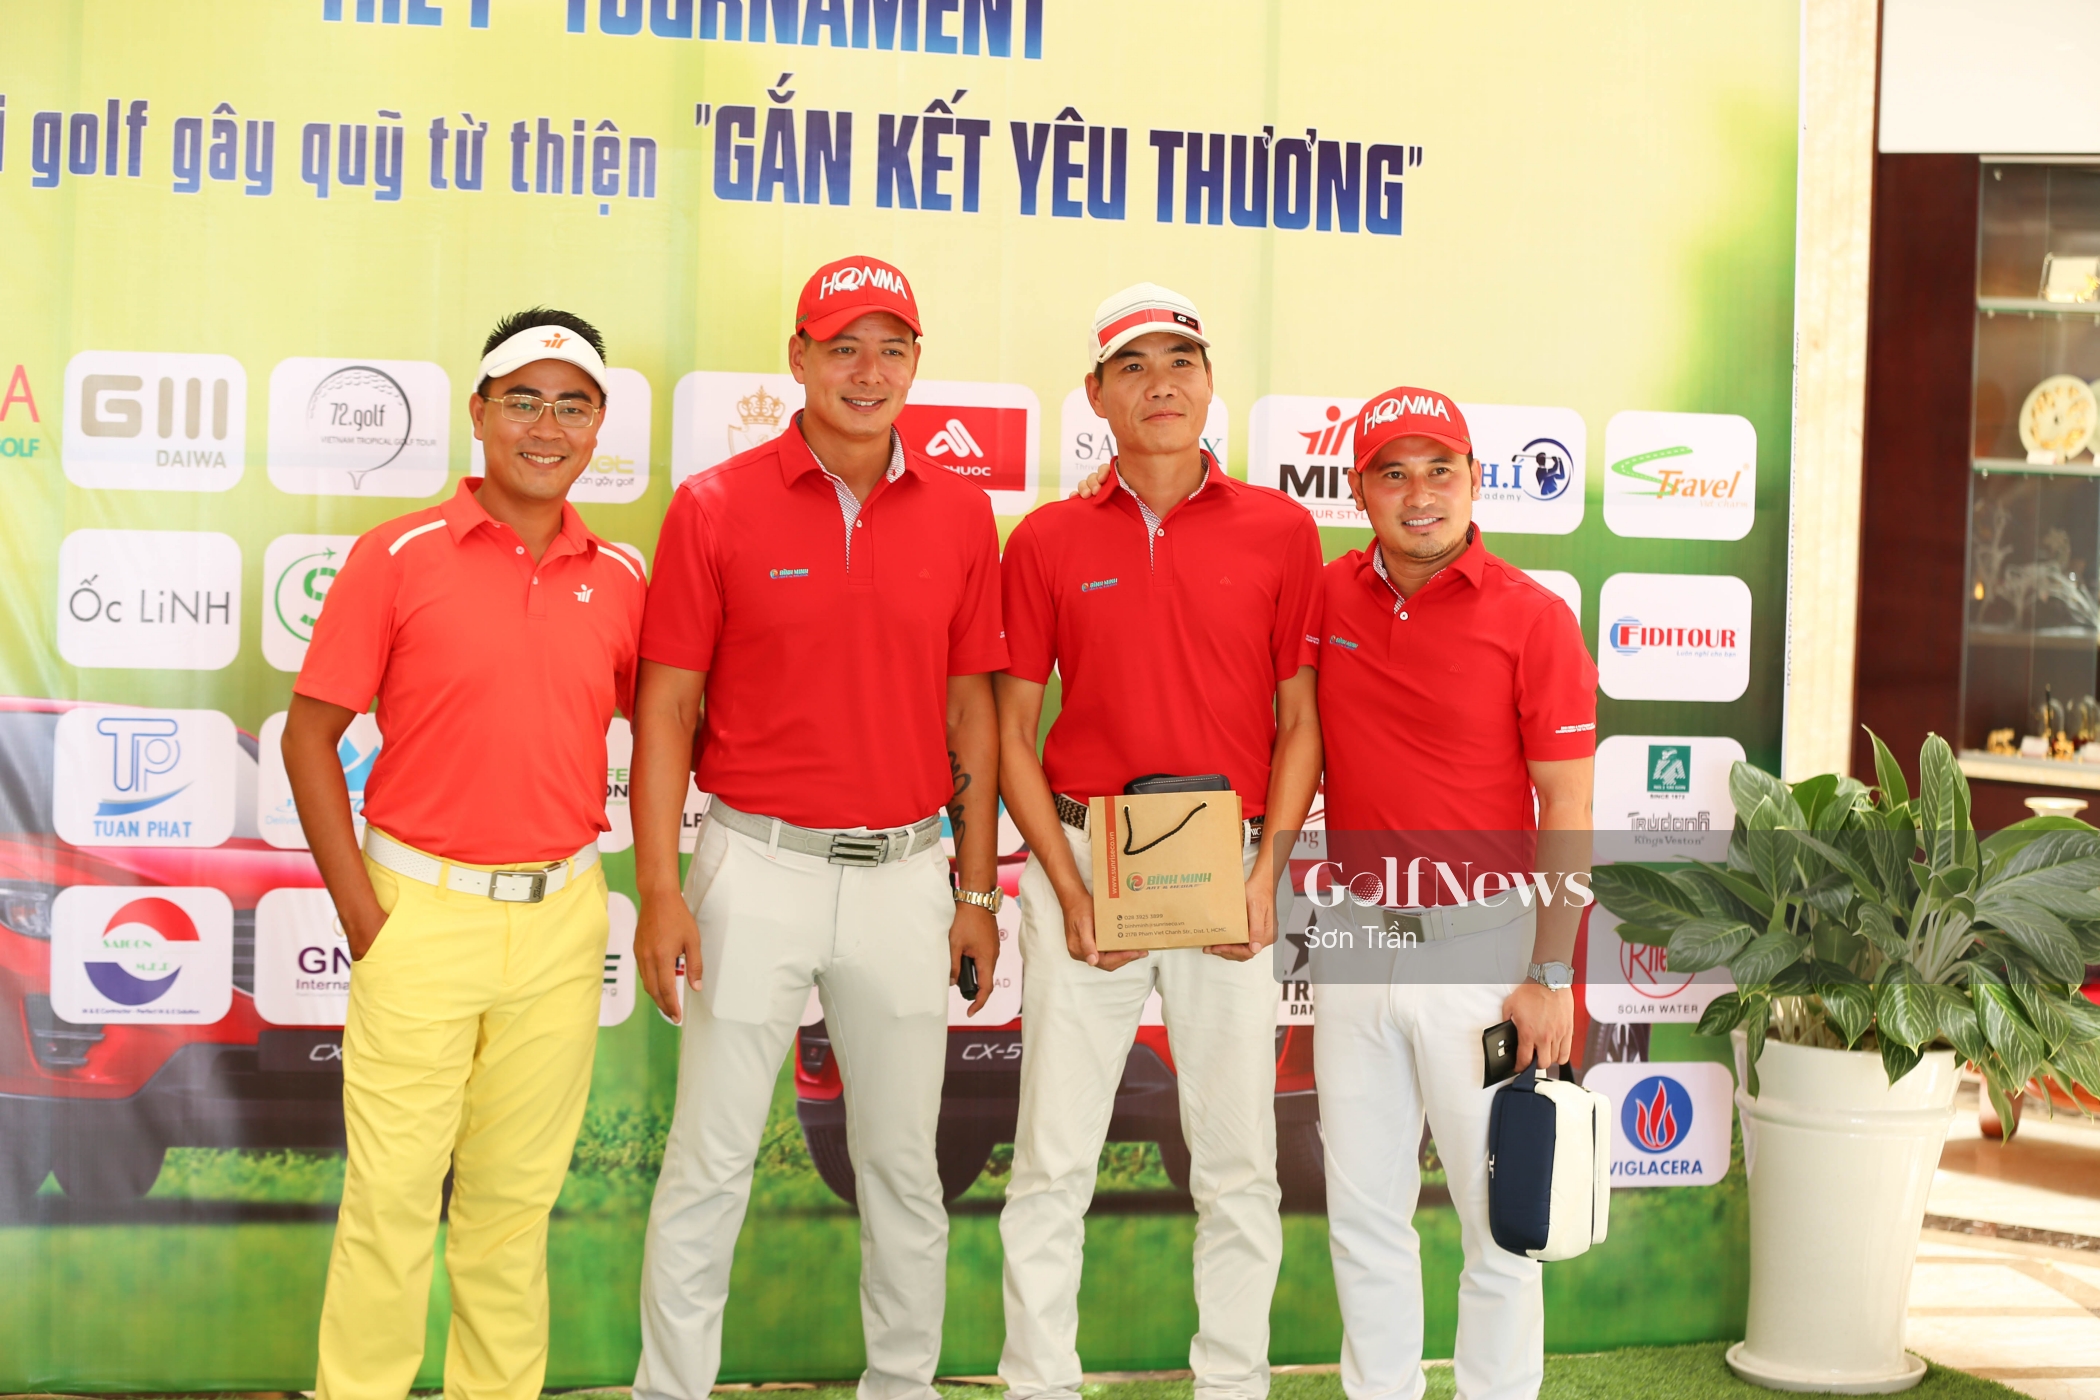 Bình Minh & Partners Golf Championship 1st Tournament: Quy tụ đông đảo anh tài